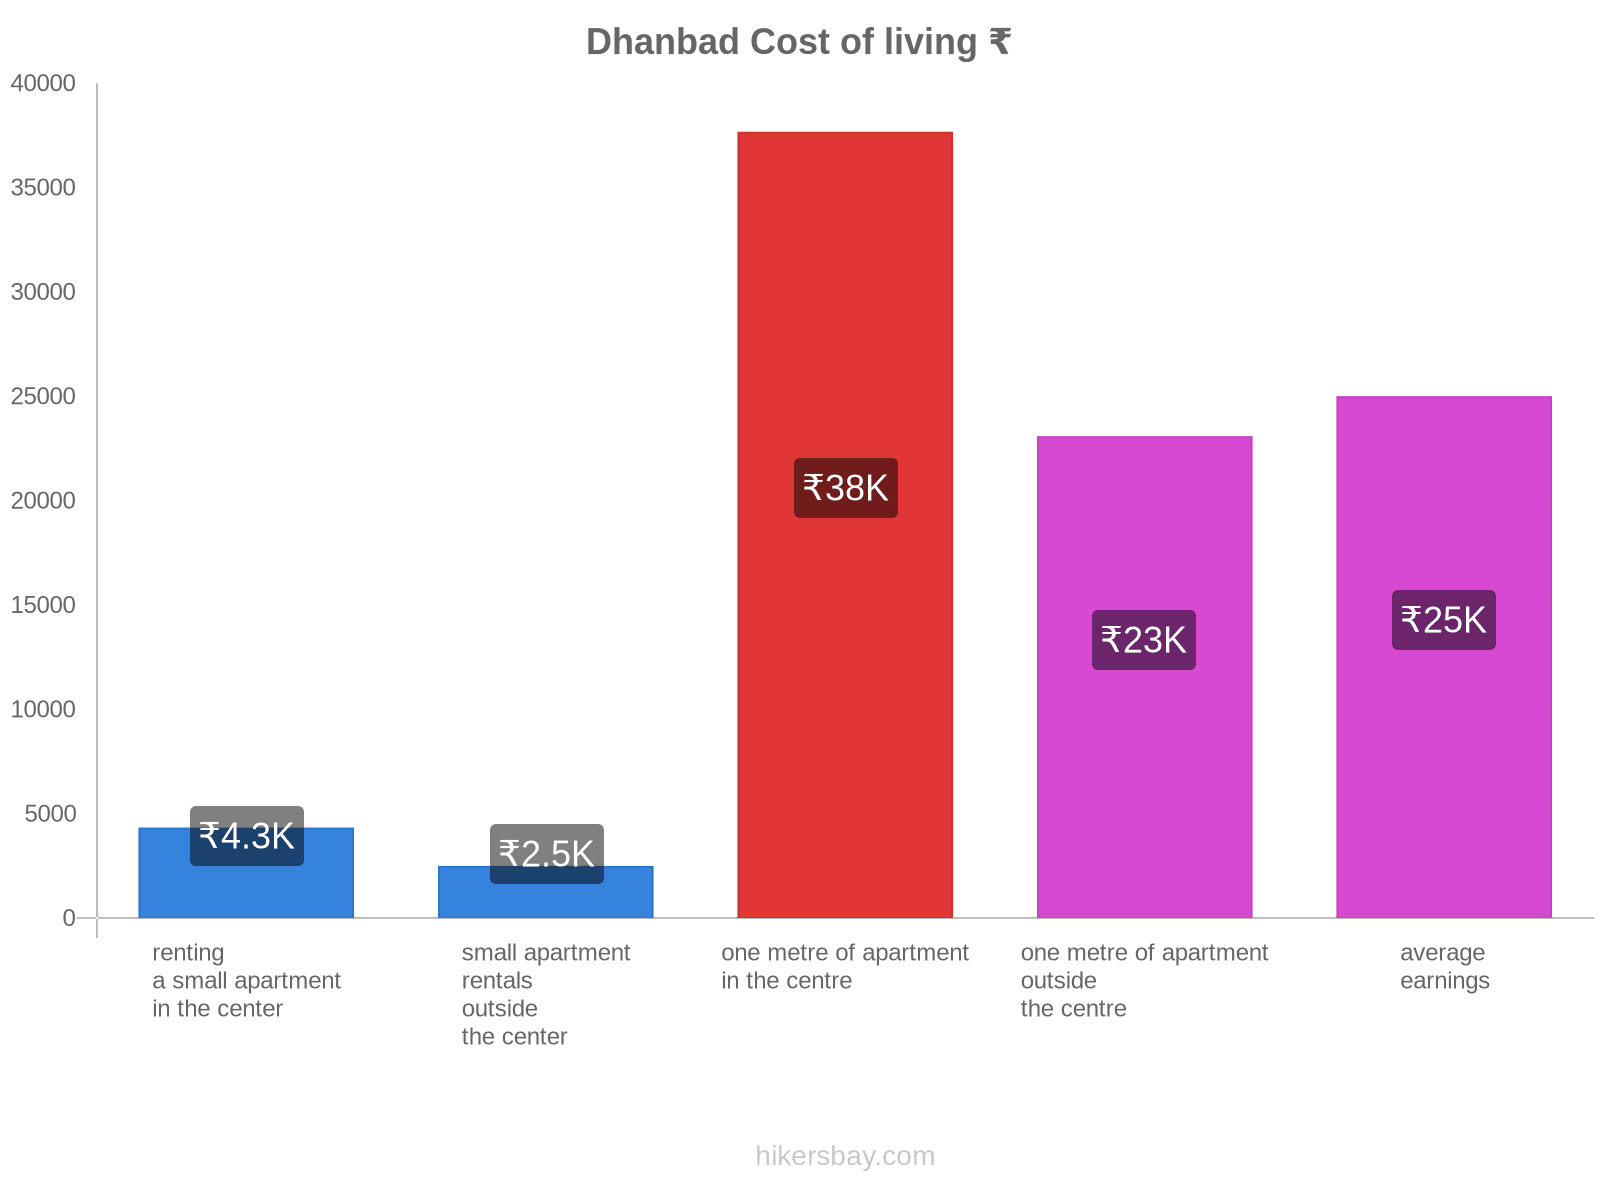 Dhanbad cost of living hikersbay.com